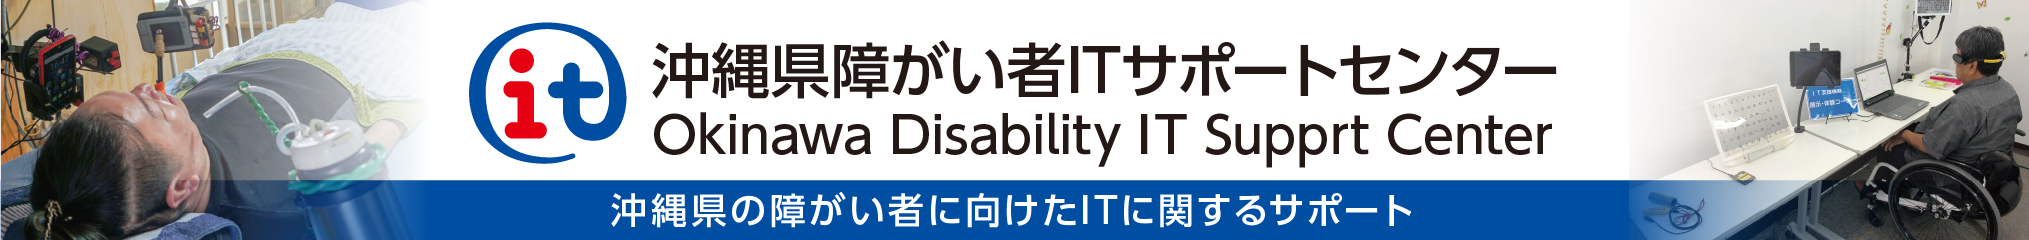 沖縄県障がい者ITサポートセンター Okinawa Disability IT Support Center 沖縄県の障がい者に向けたITに関するサポート